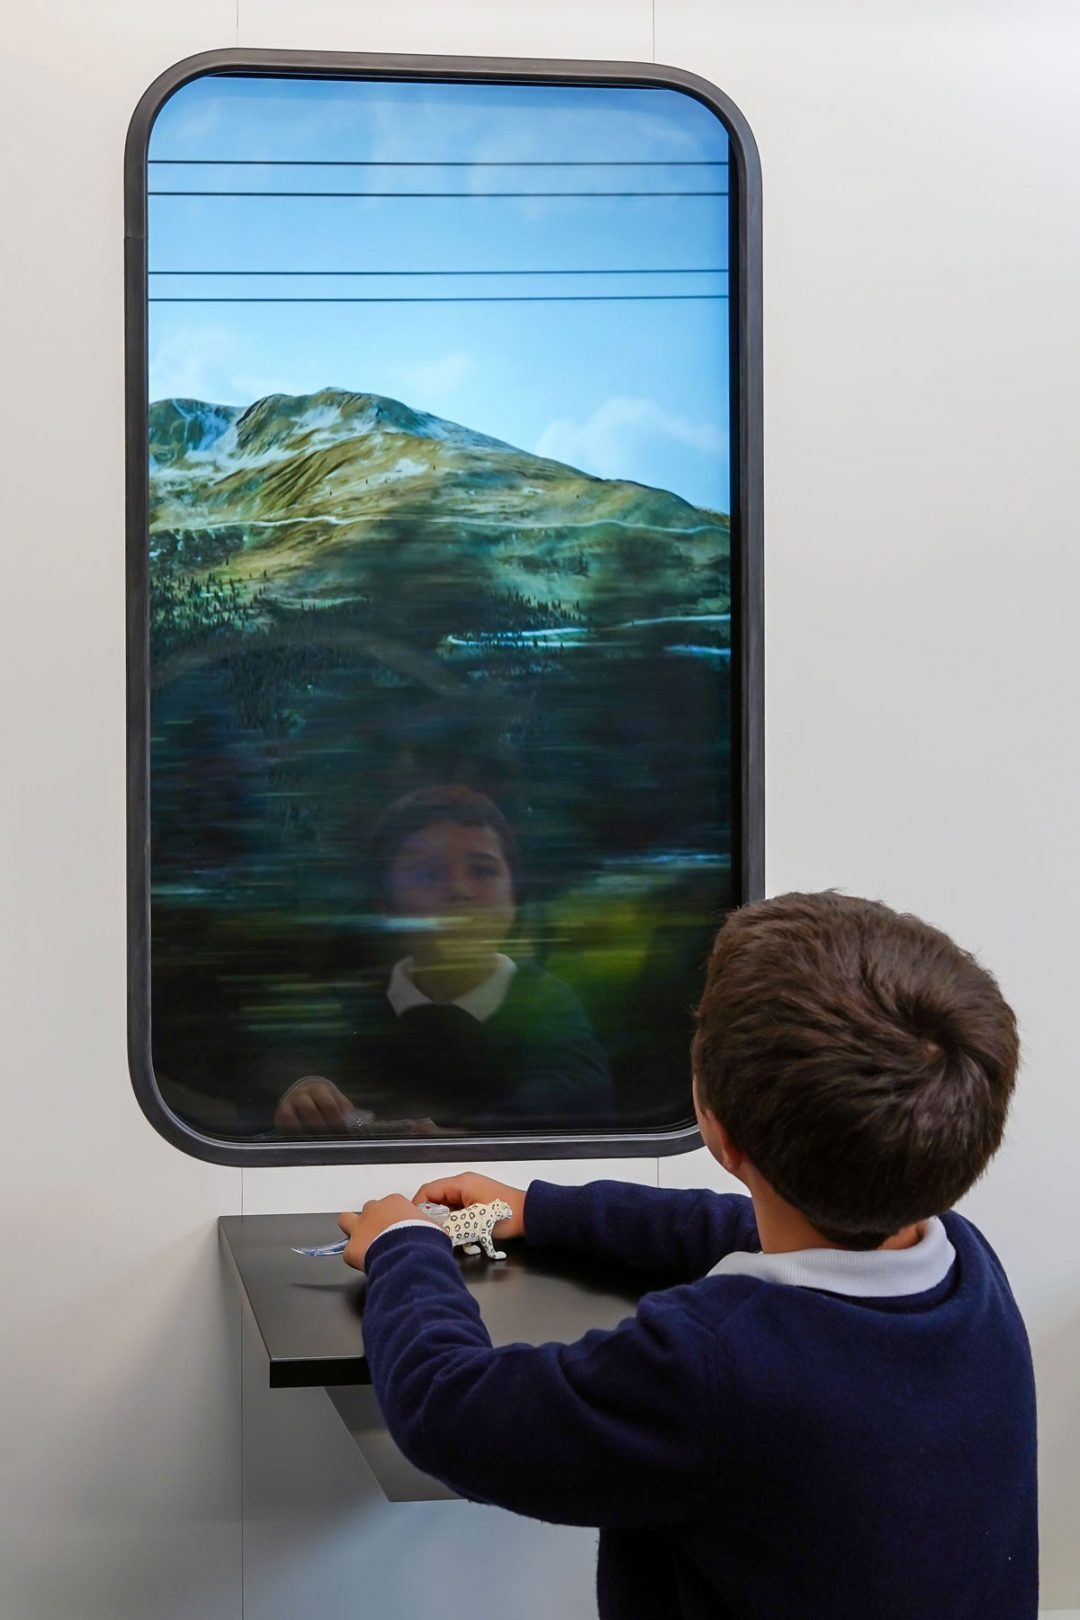 finestrino digitale nella mostra Oltrepassare a Milano